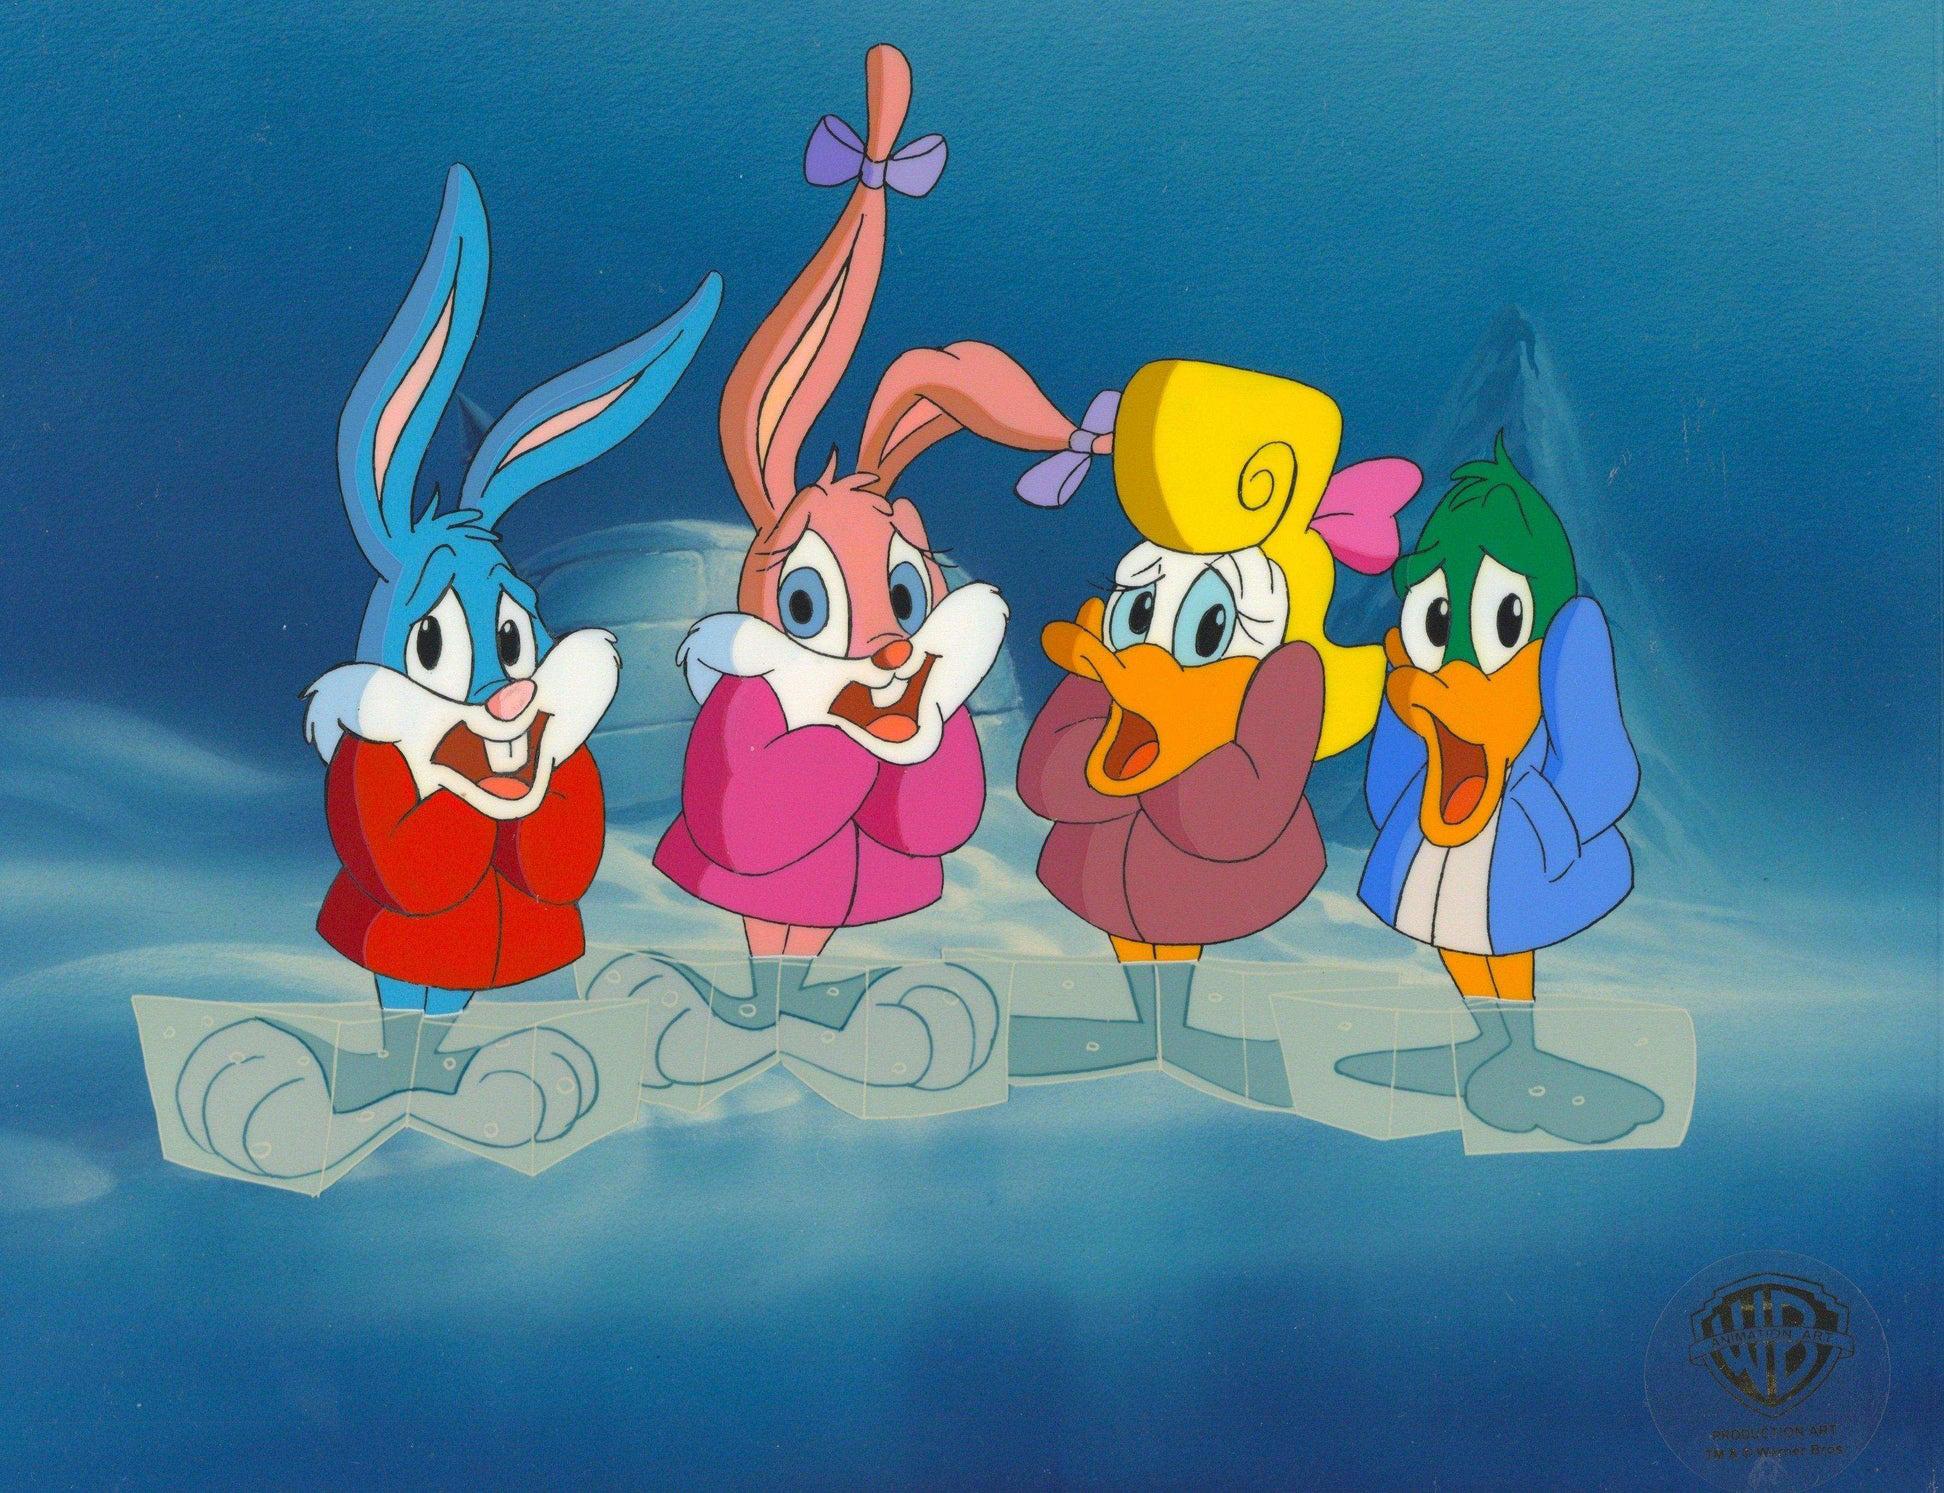 Production originale de Tiny Toons : Babs Bunny, Buster Bunny, Shirley, Plucky  - Art de Warner Bros. Studio Artists